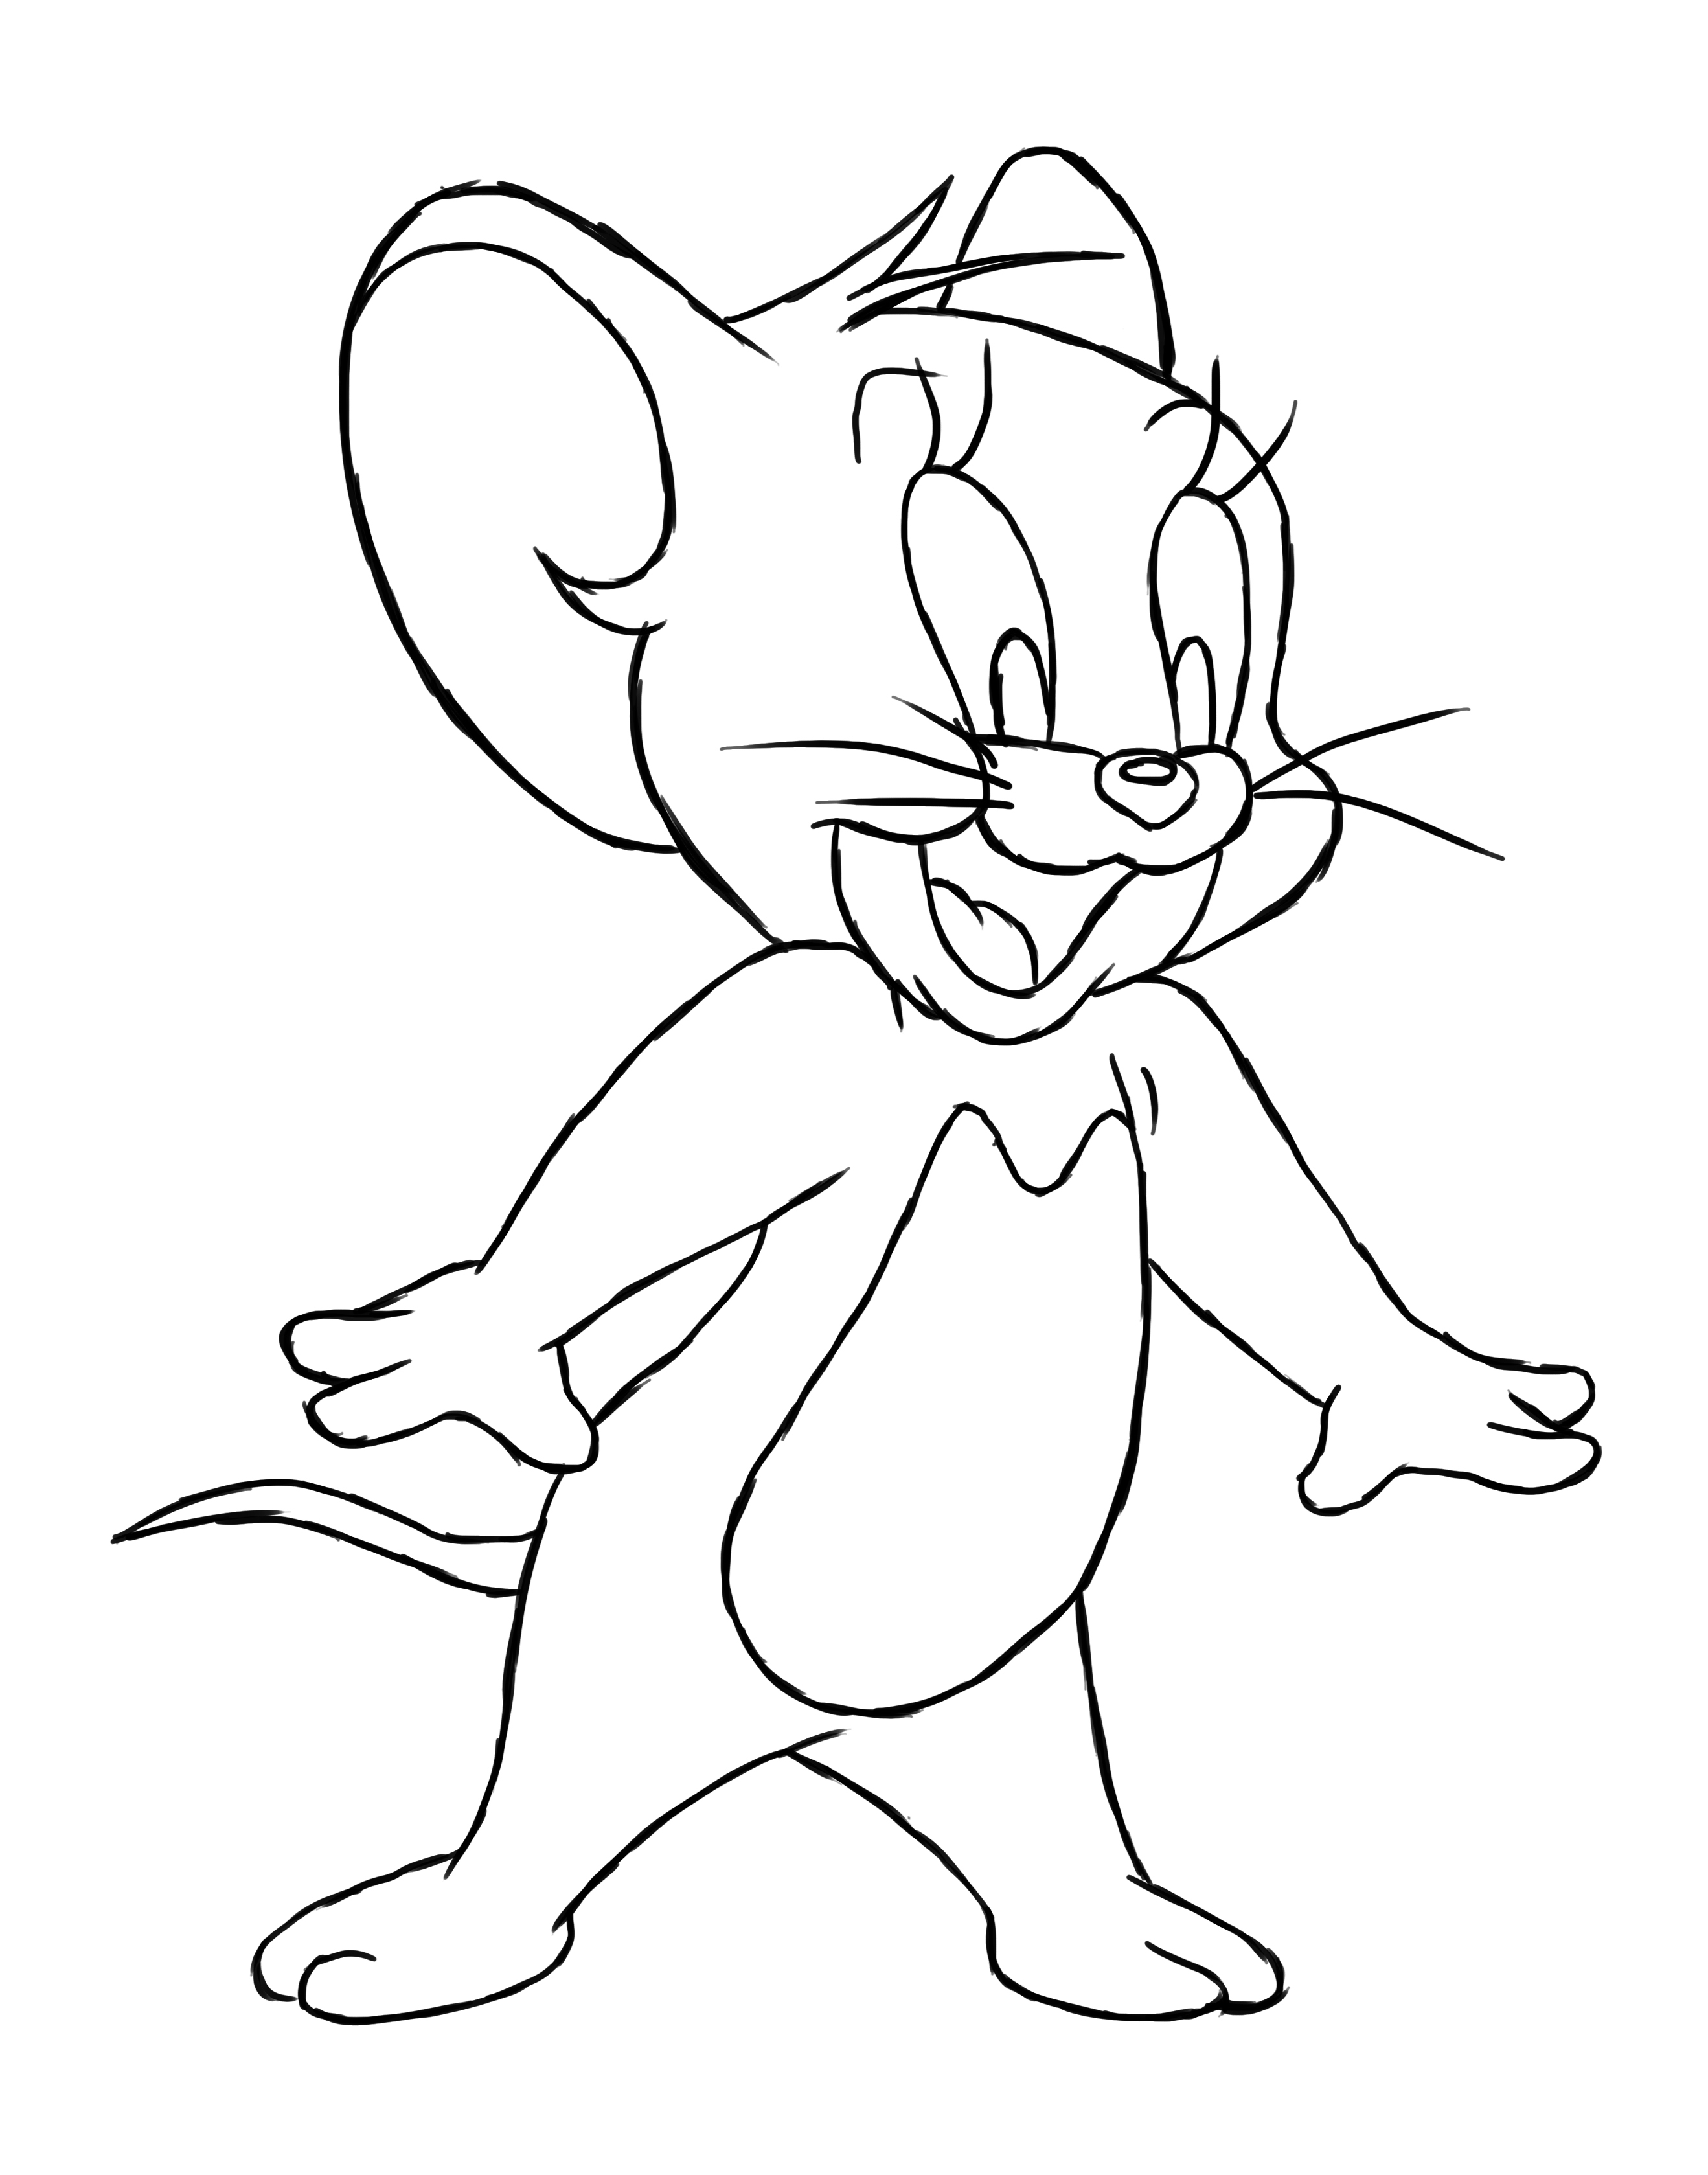 Как нарисовать Тома из мультфильма Том и Джерри (урок с возможность последующей раскраски”)